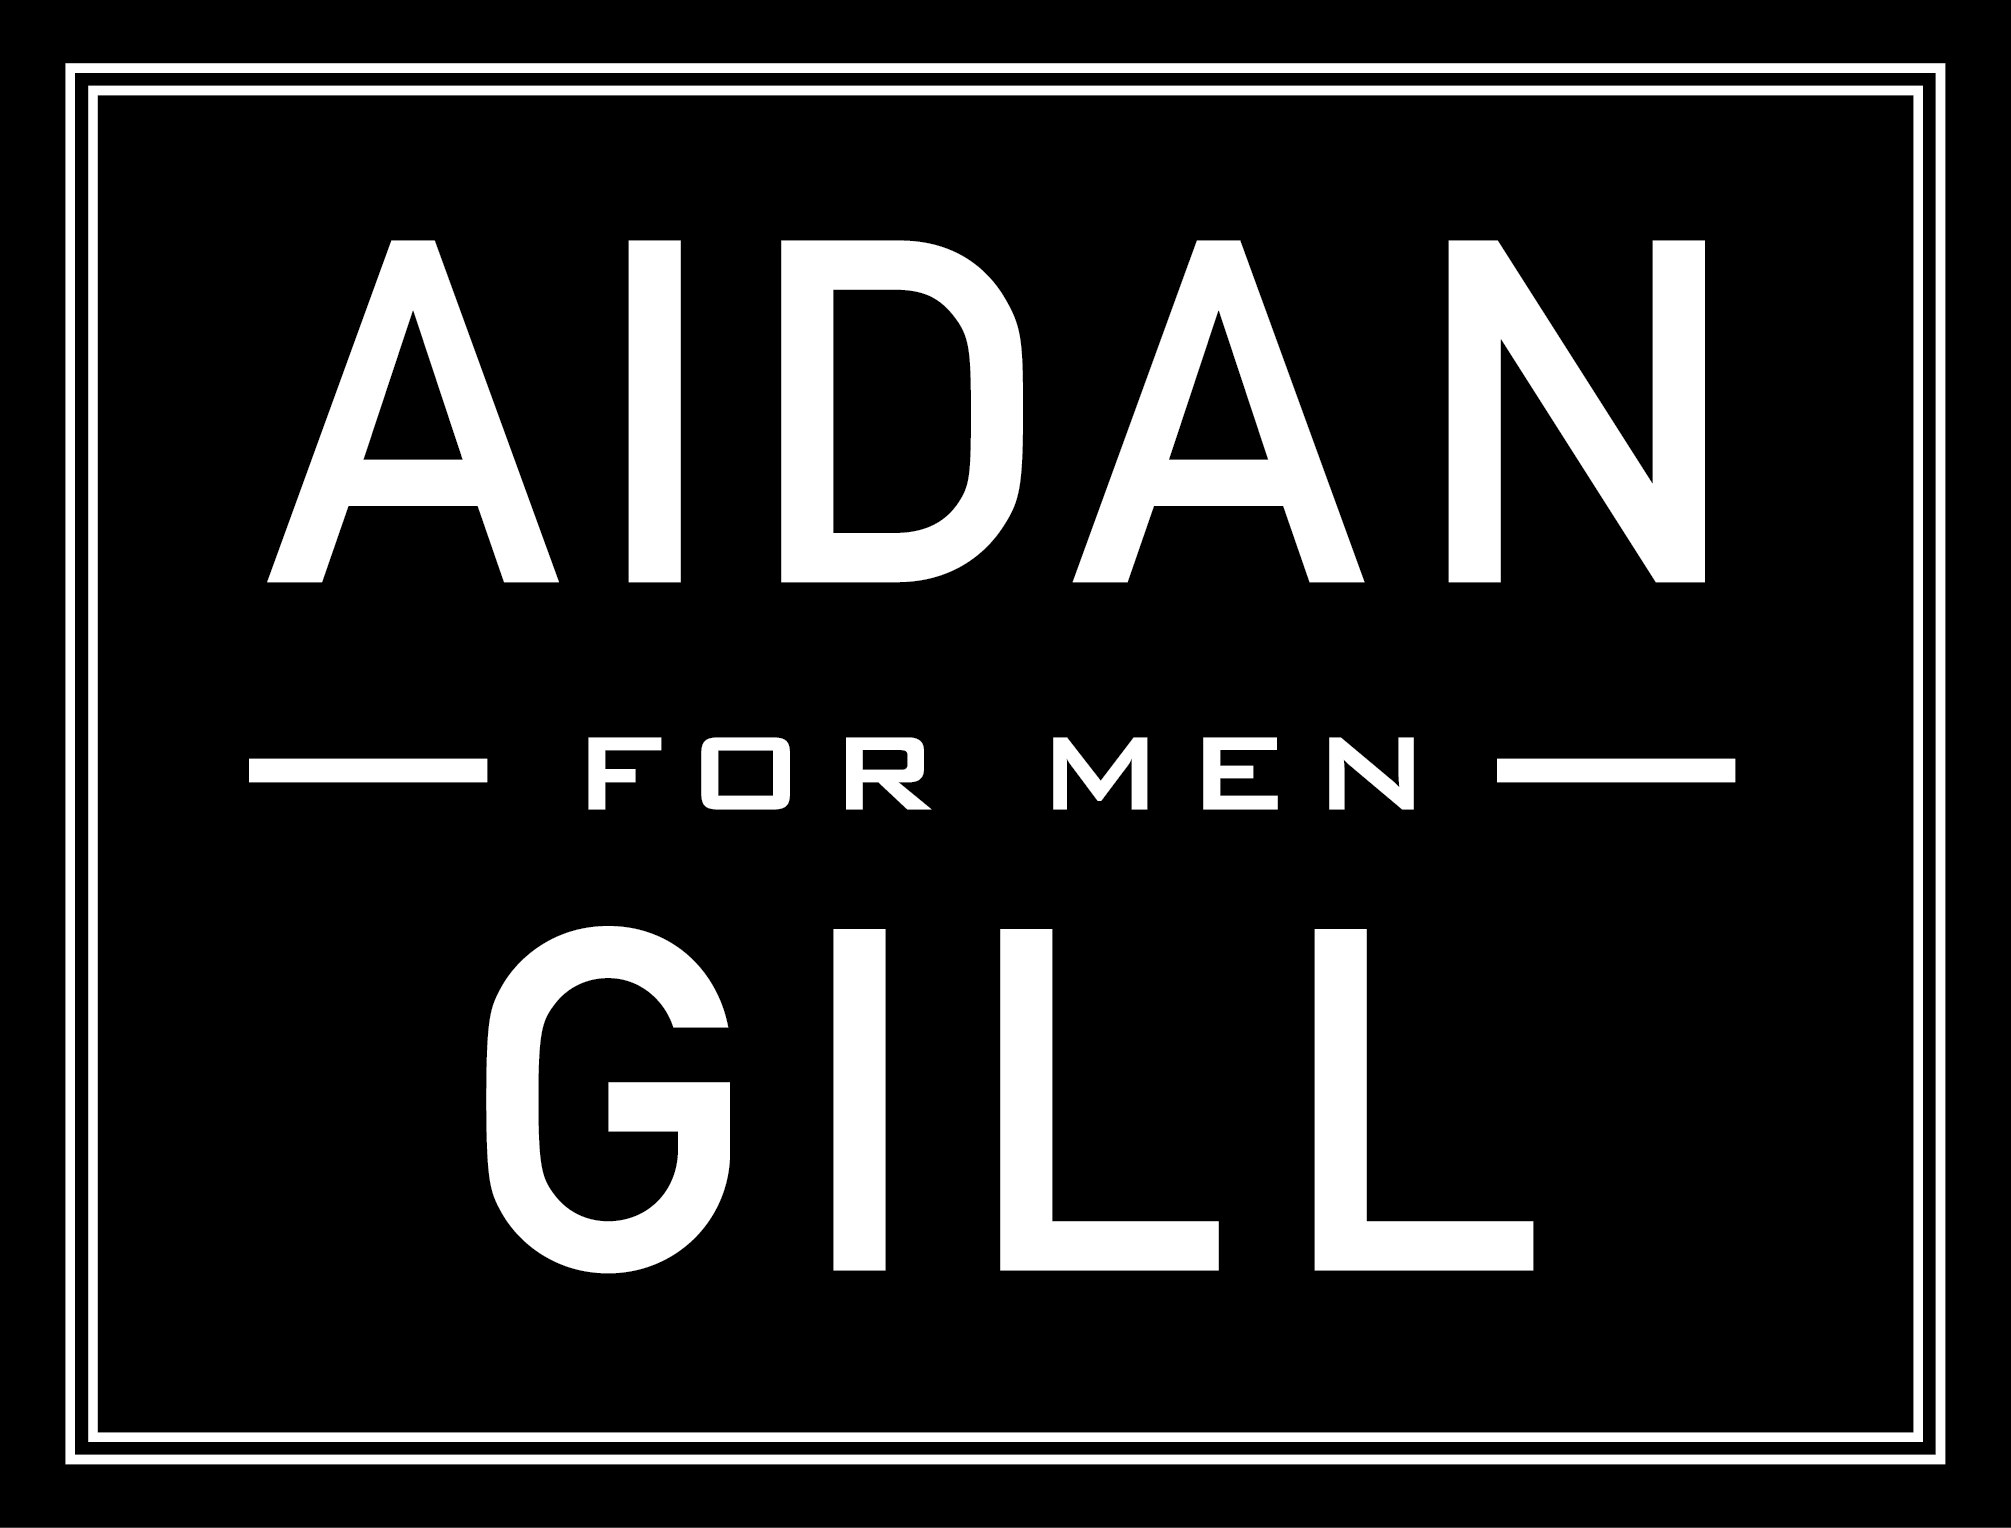 Logo for "Aidan Gill for Men"